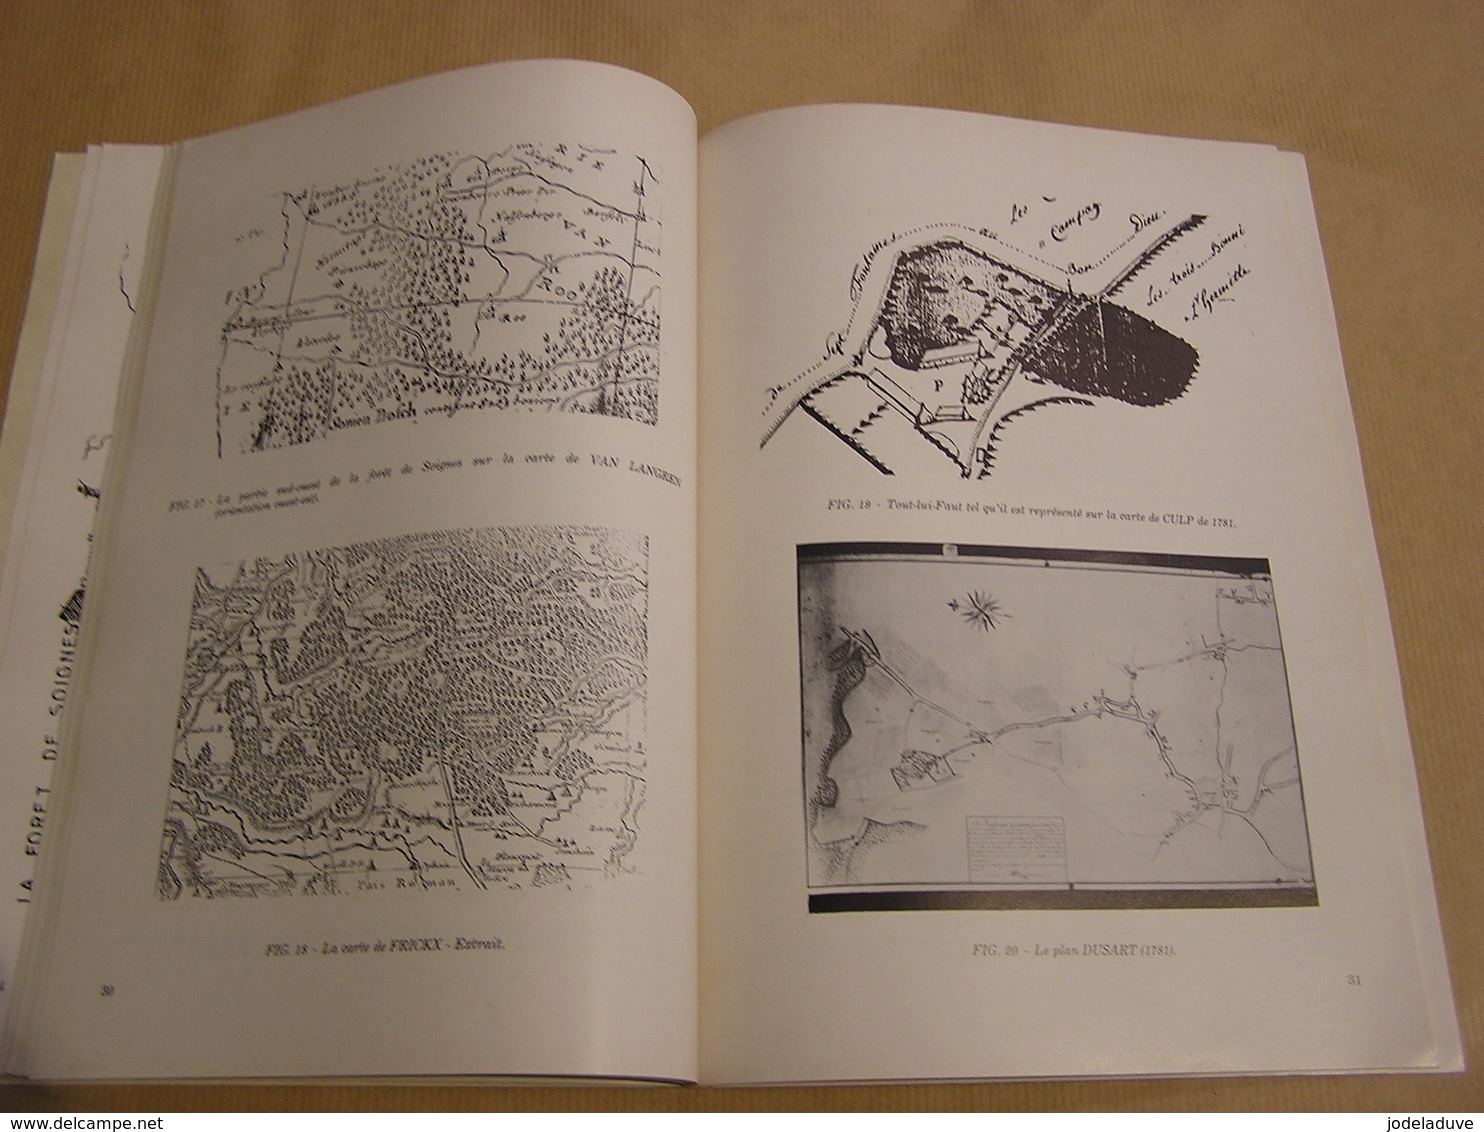 BRAINE L' ALLEUD ET LE FORÊT DE SOIGNES Ernest Pays 1983 Régionalisme Brabant Wallon Carte Plan Cartographie Bornes